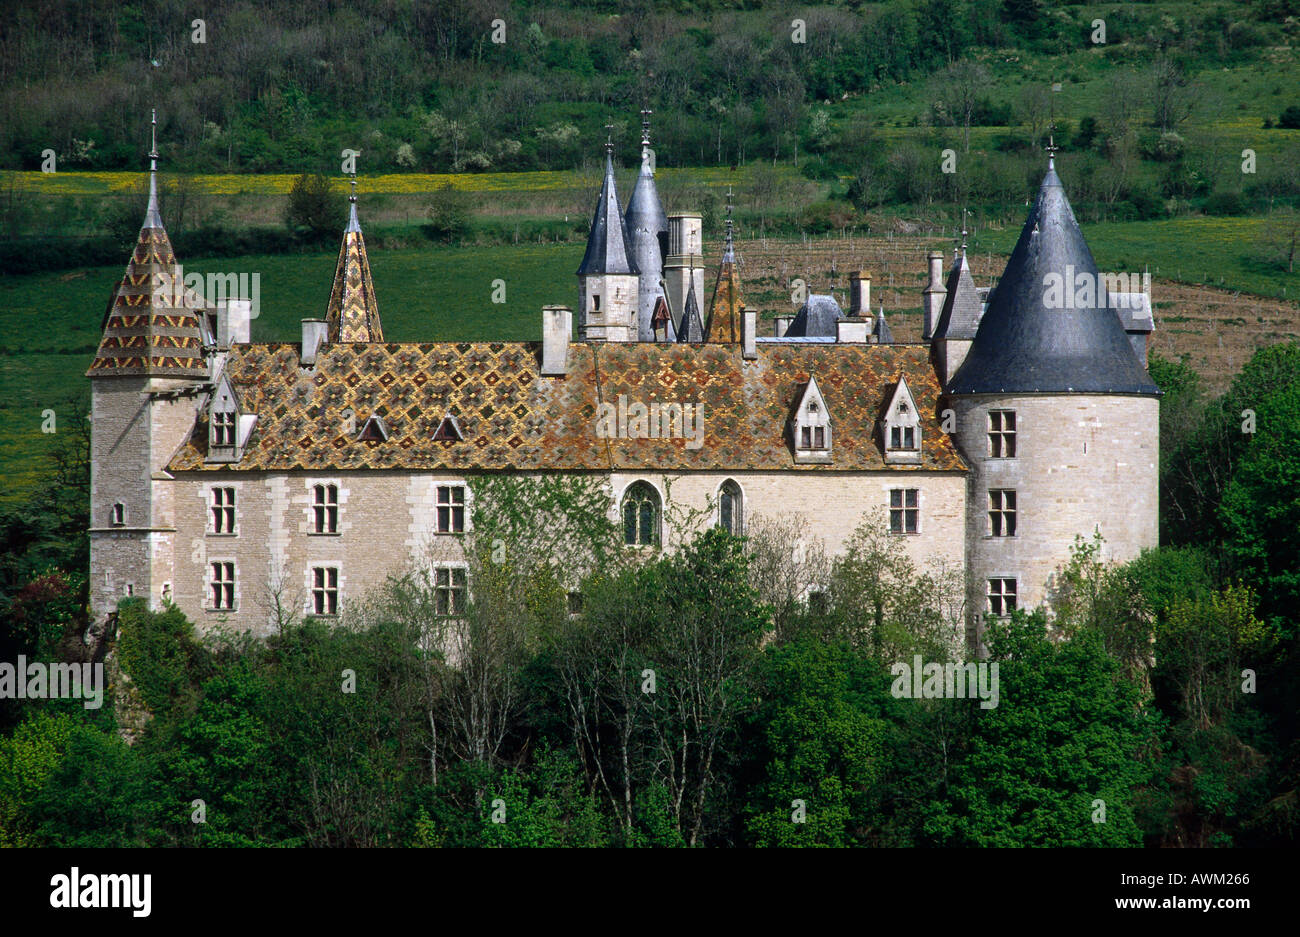 Facade of castle, France, Europe Stock Photo